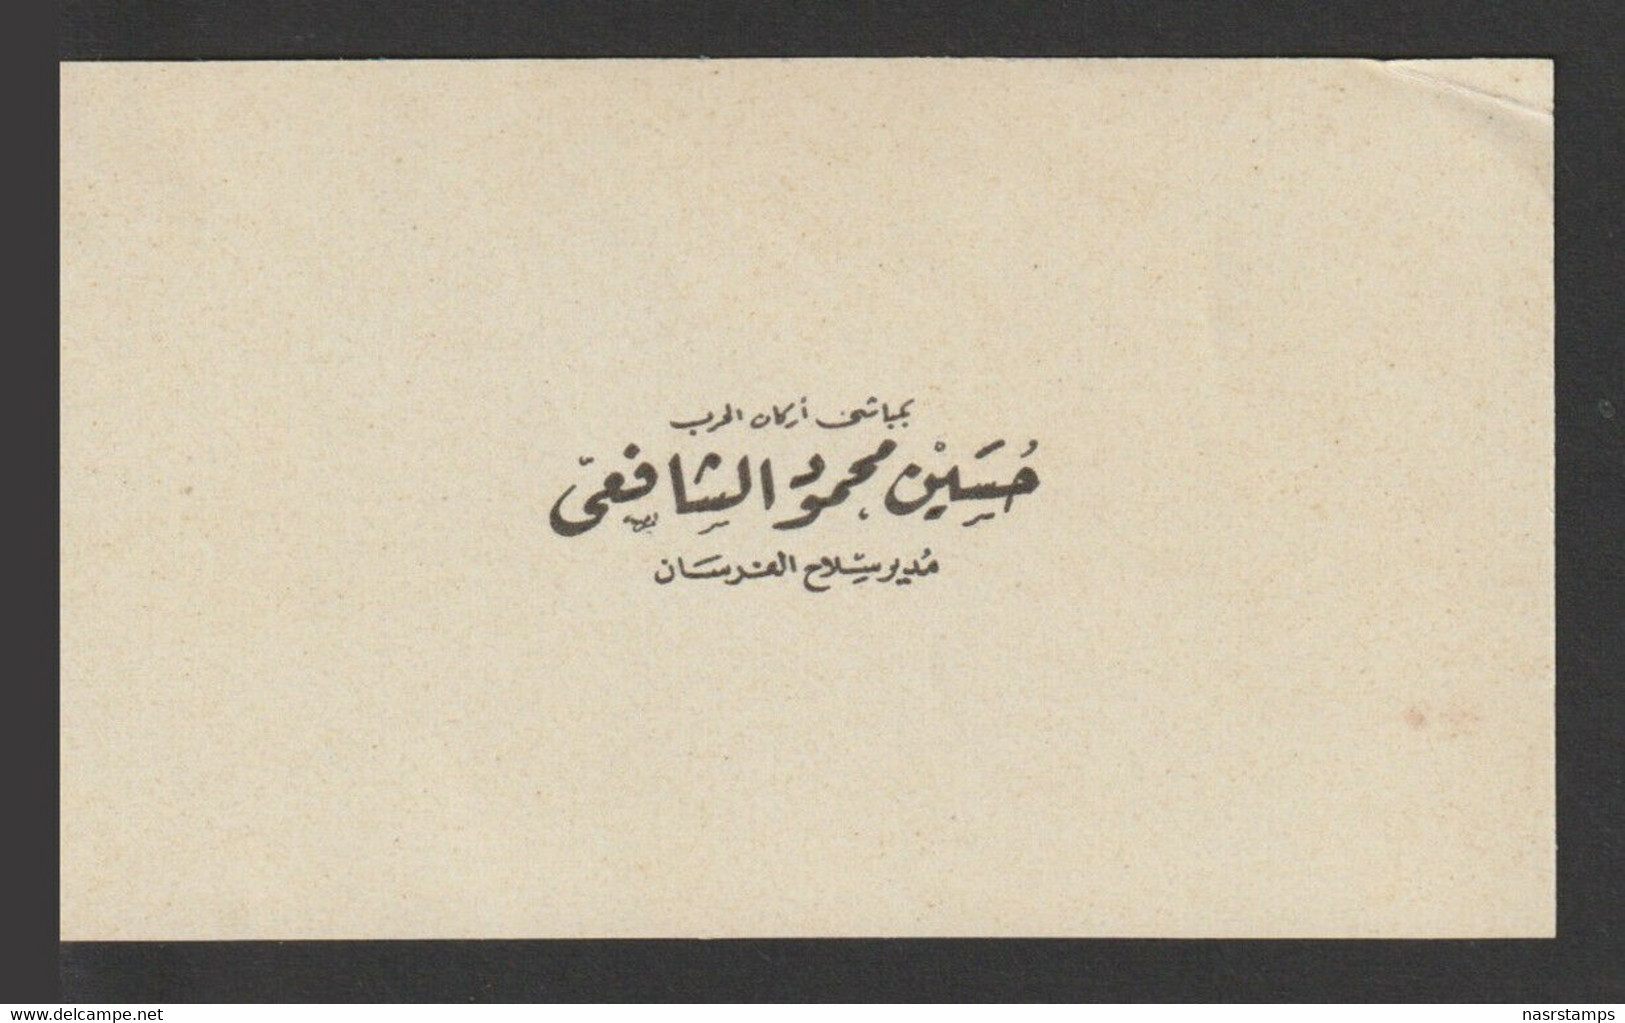 Egypt - Very Rare - Original Greeting Personal Card "Hussain El Shafie" - Briefe U. Dokumente